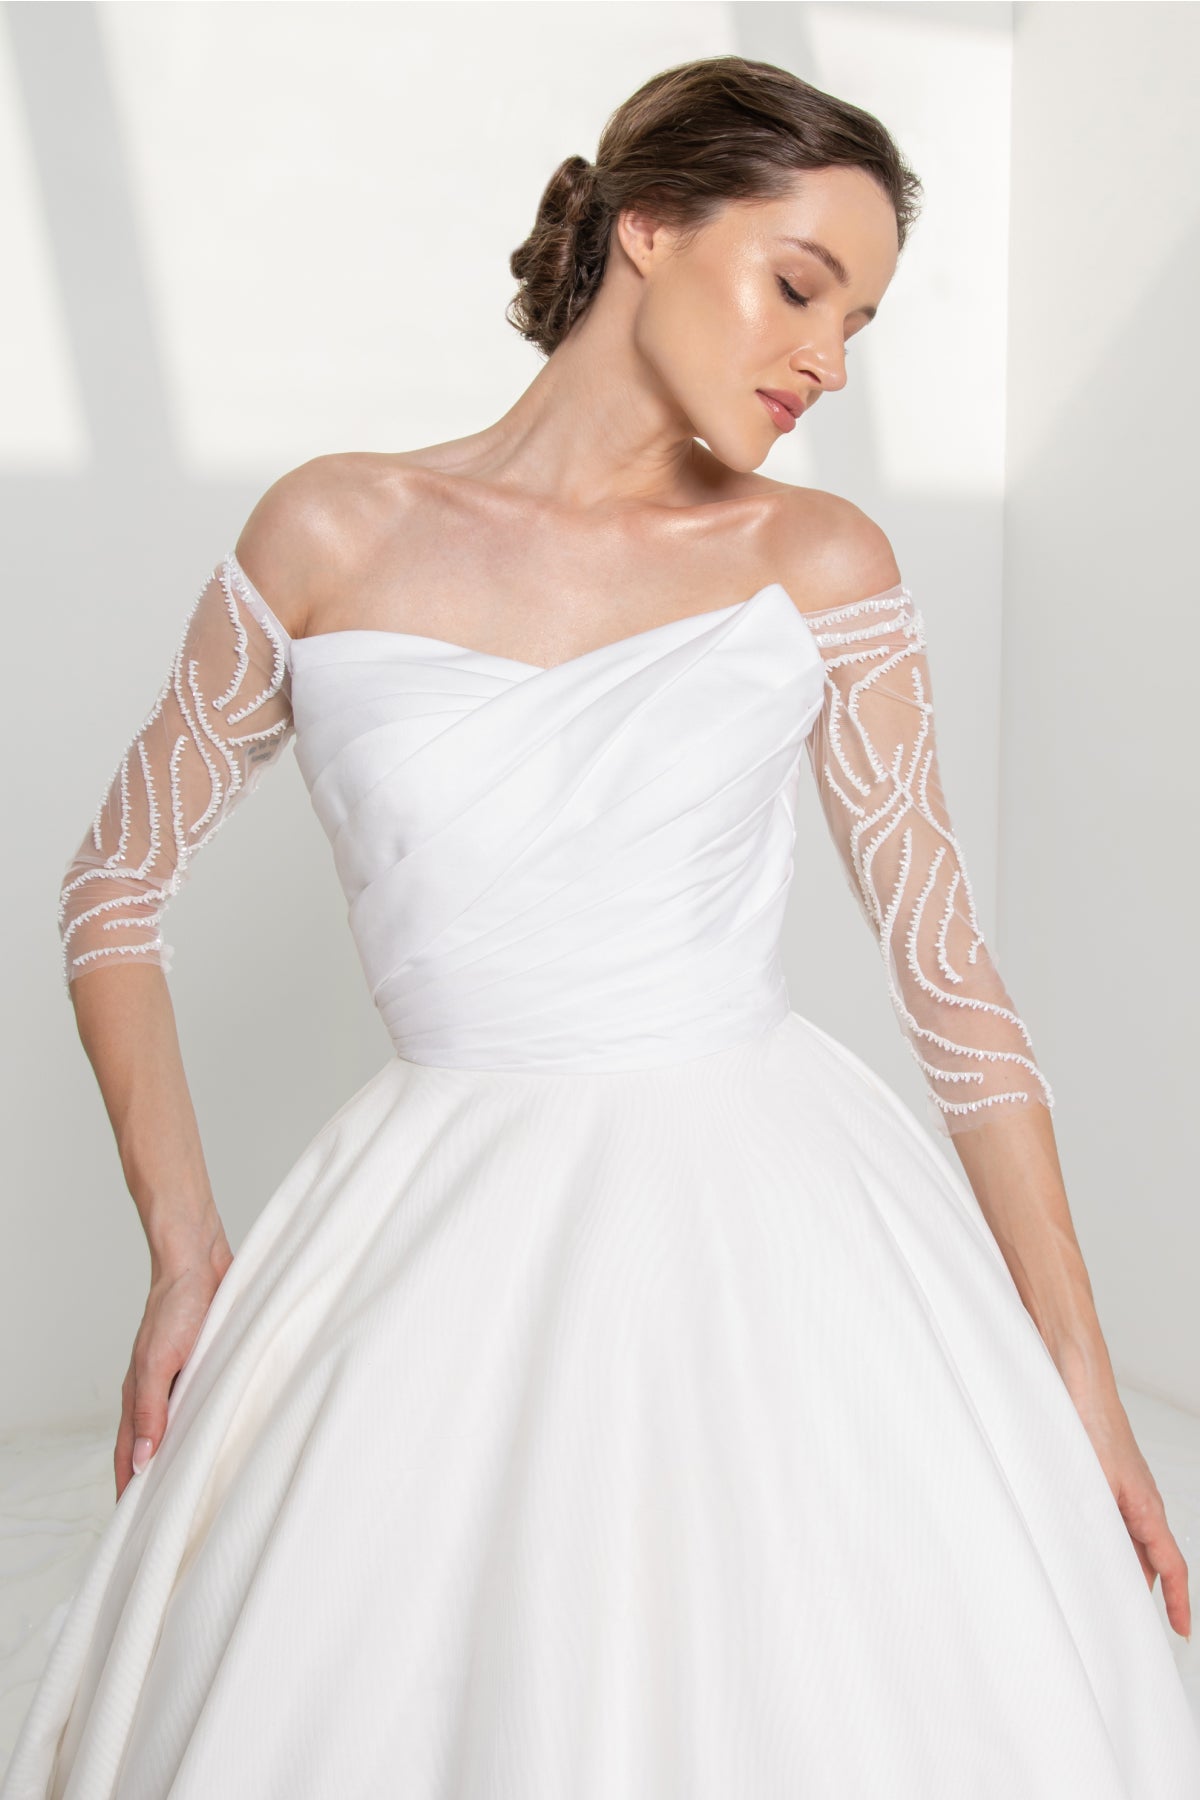 White silk taffeta gown